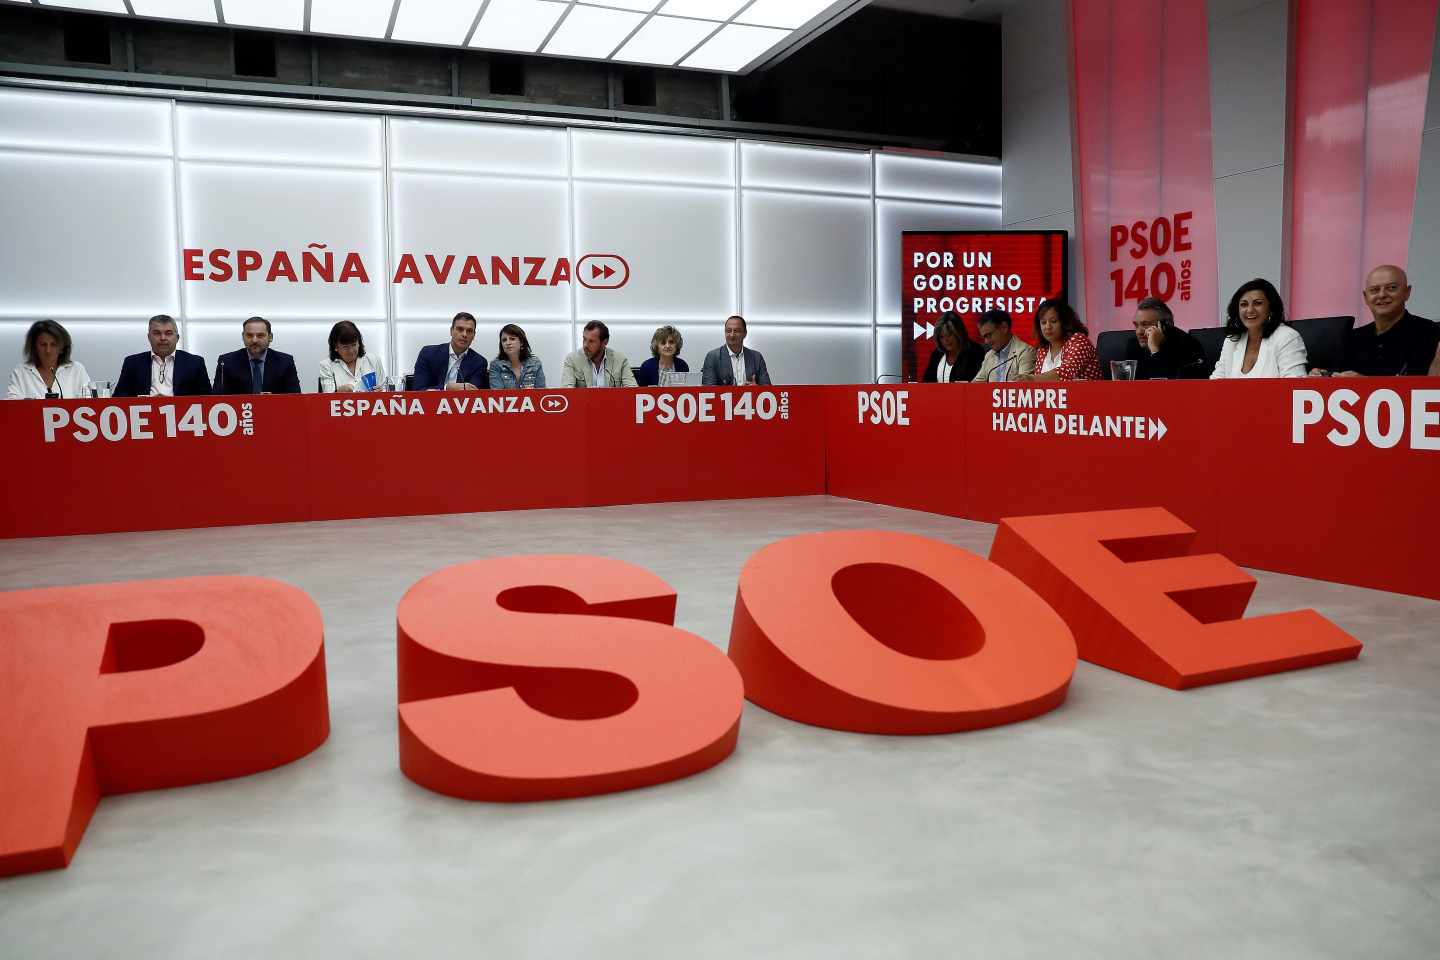 PSOE y Podemos intentan movilizar a sus bases para que avalen el pacto de gobierno